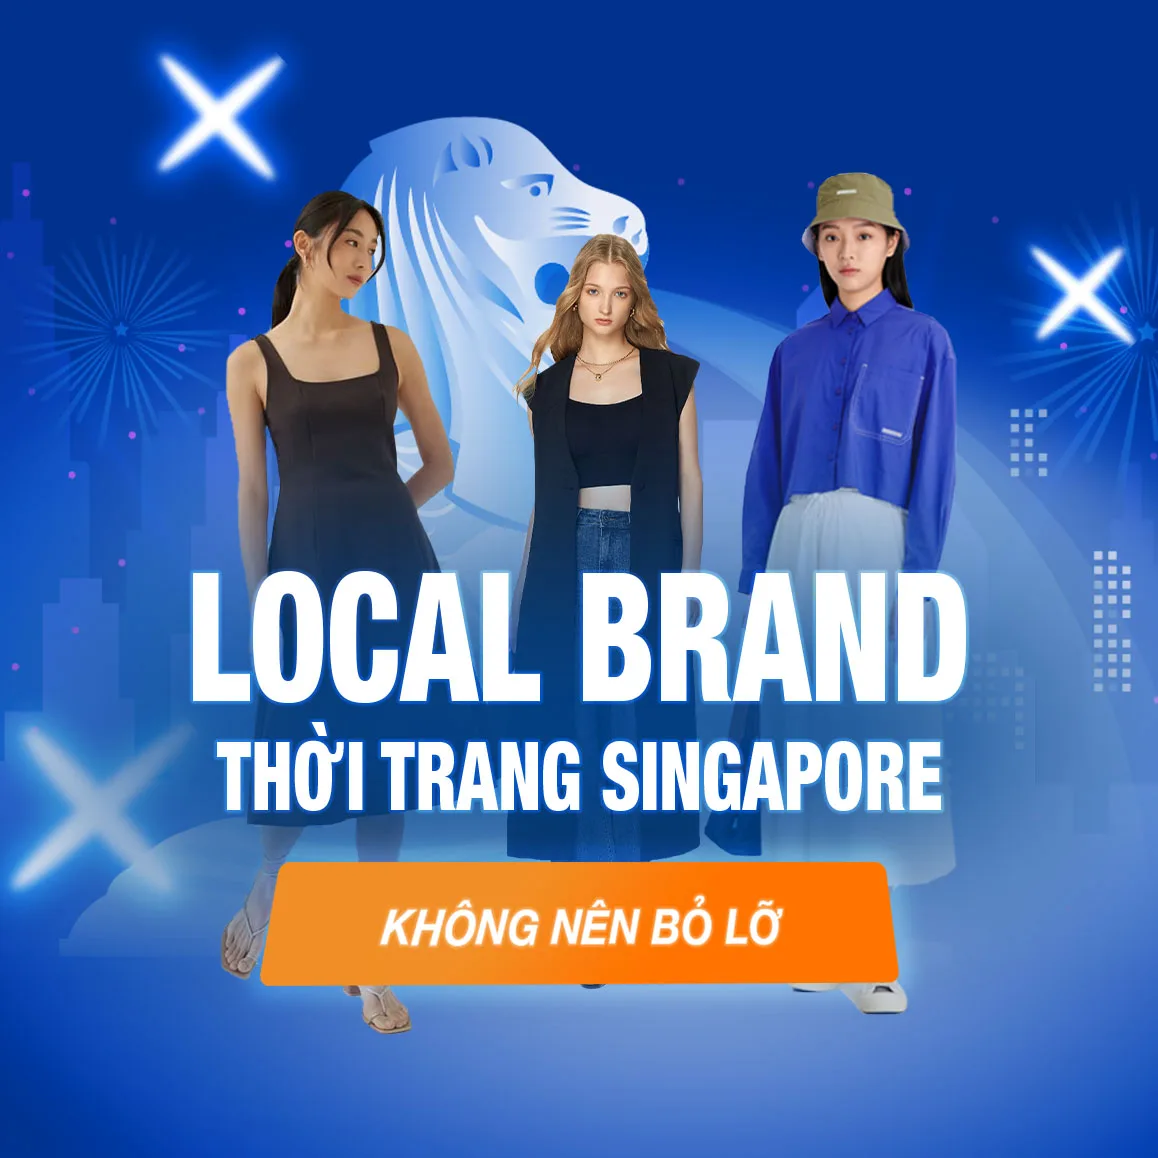 3 thương hiệu thời trang local brand Singapore bạn không nên bỏ lỡ